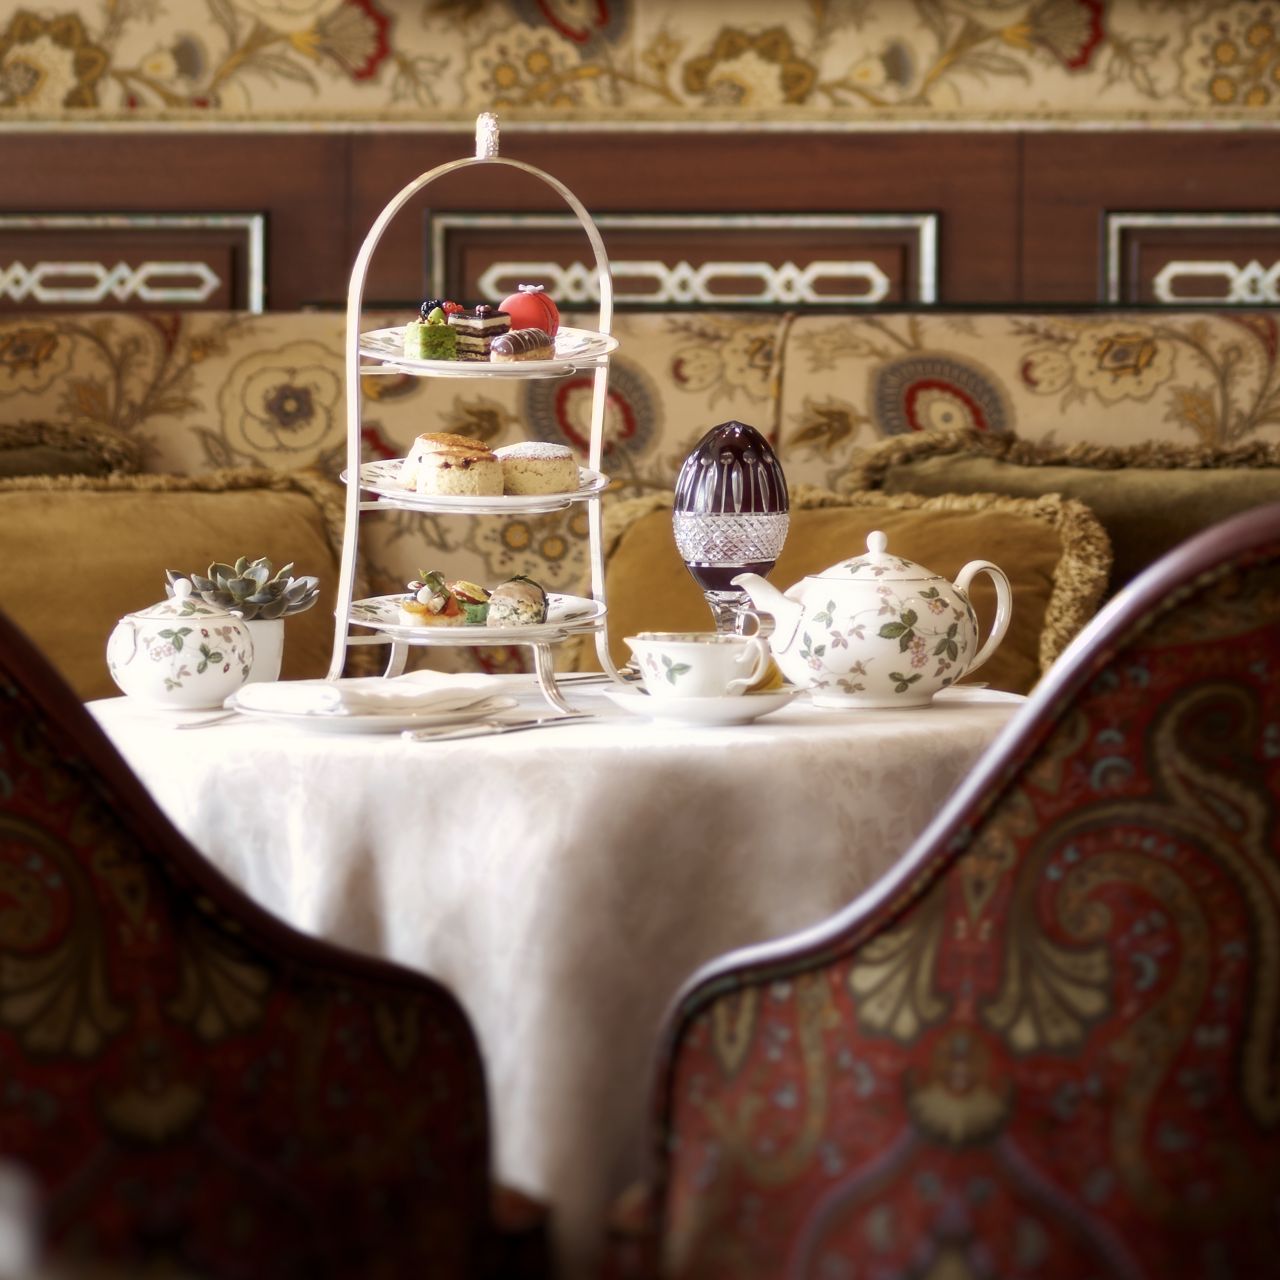 A full tea service at The Ritz-Carlton, Bahrain.